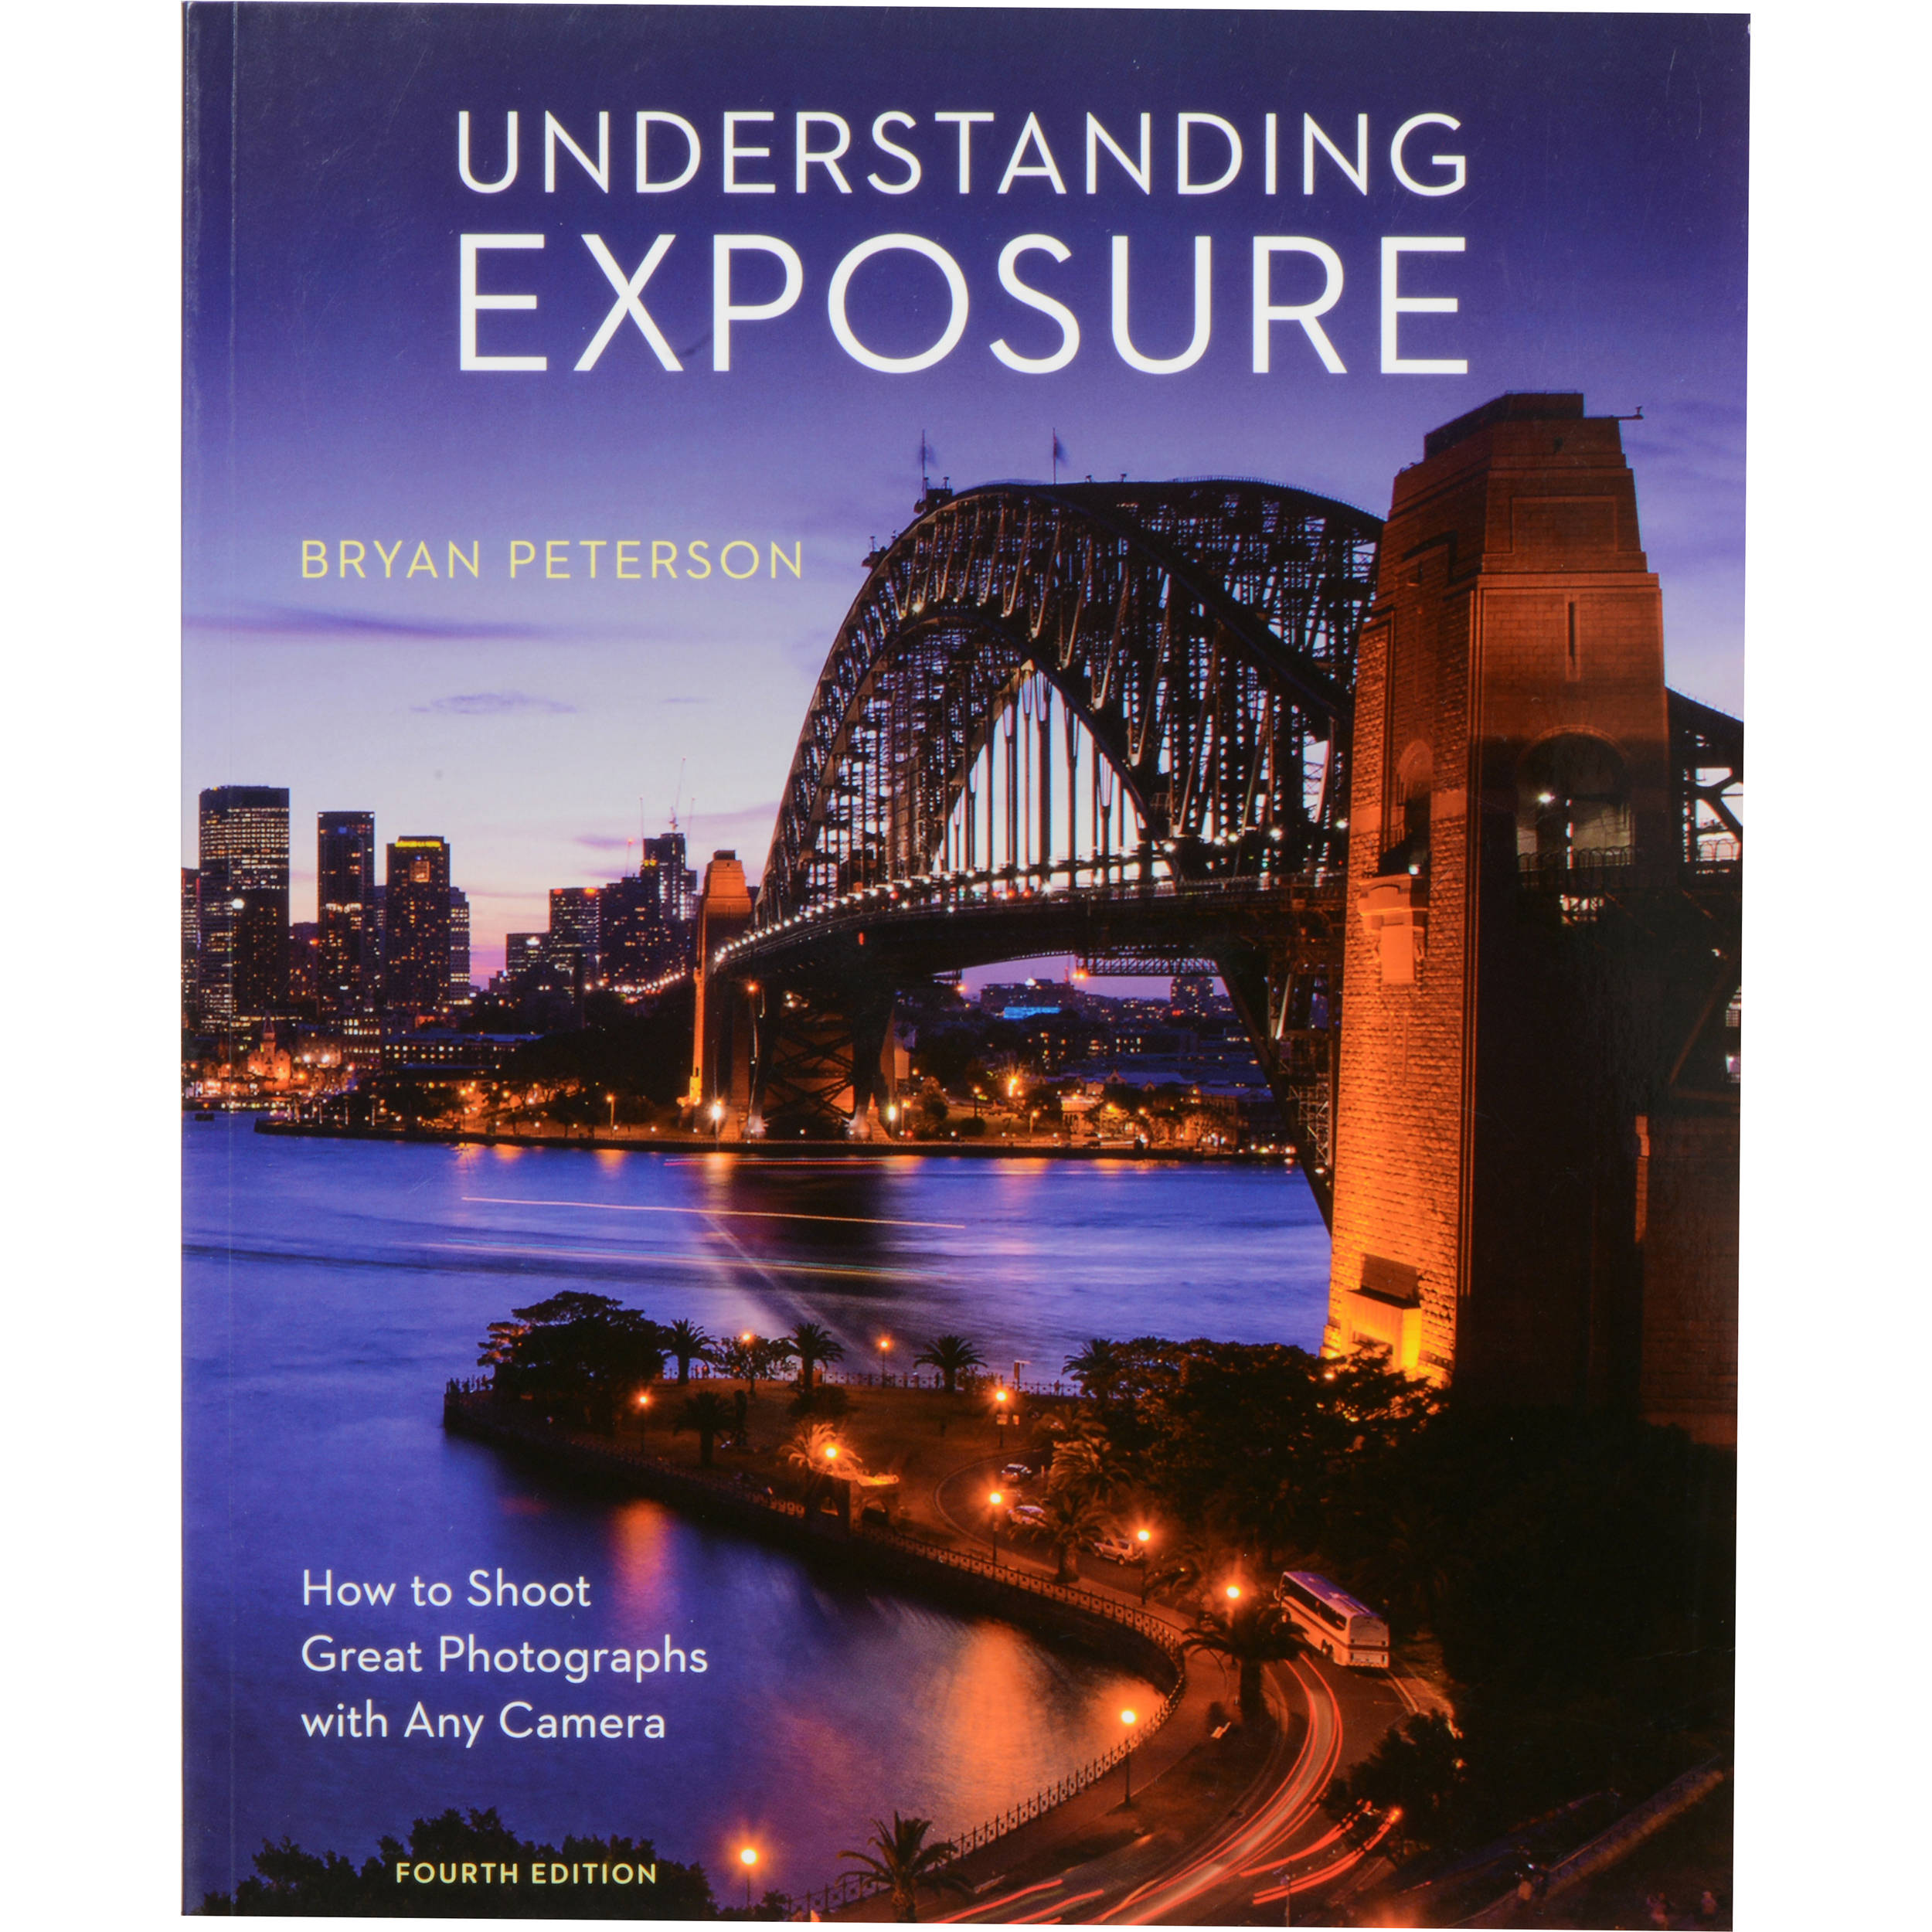 Understanding Exposure Bryan Peterson Ebook Pdf Free